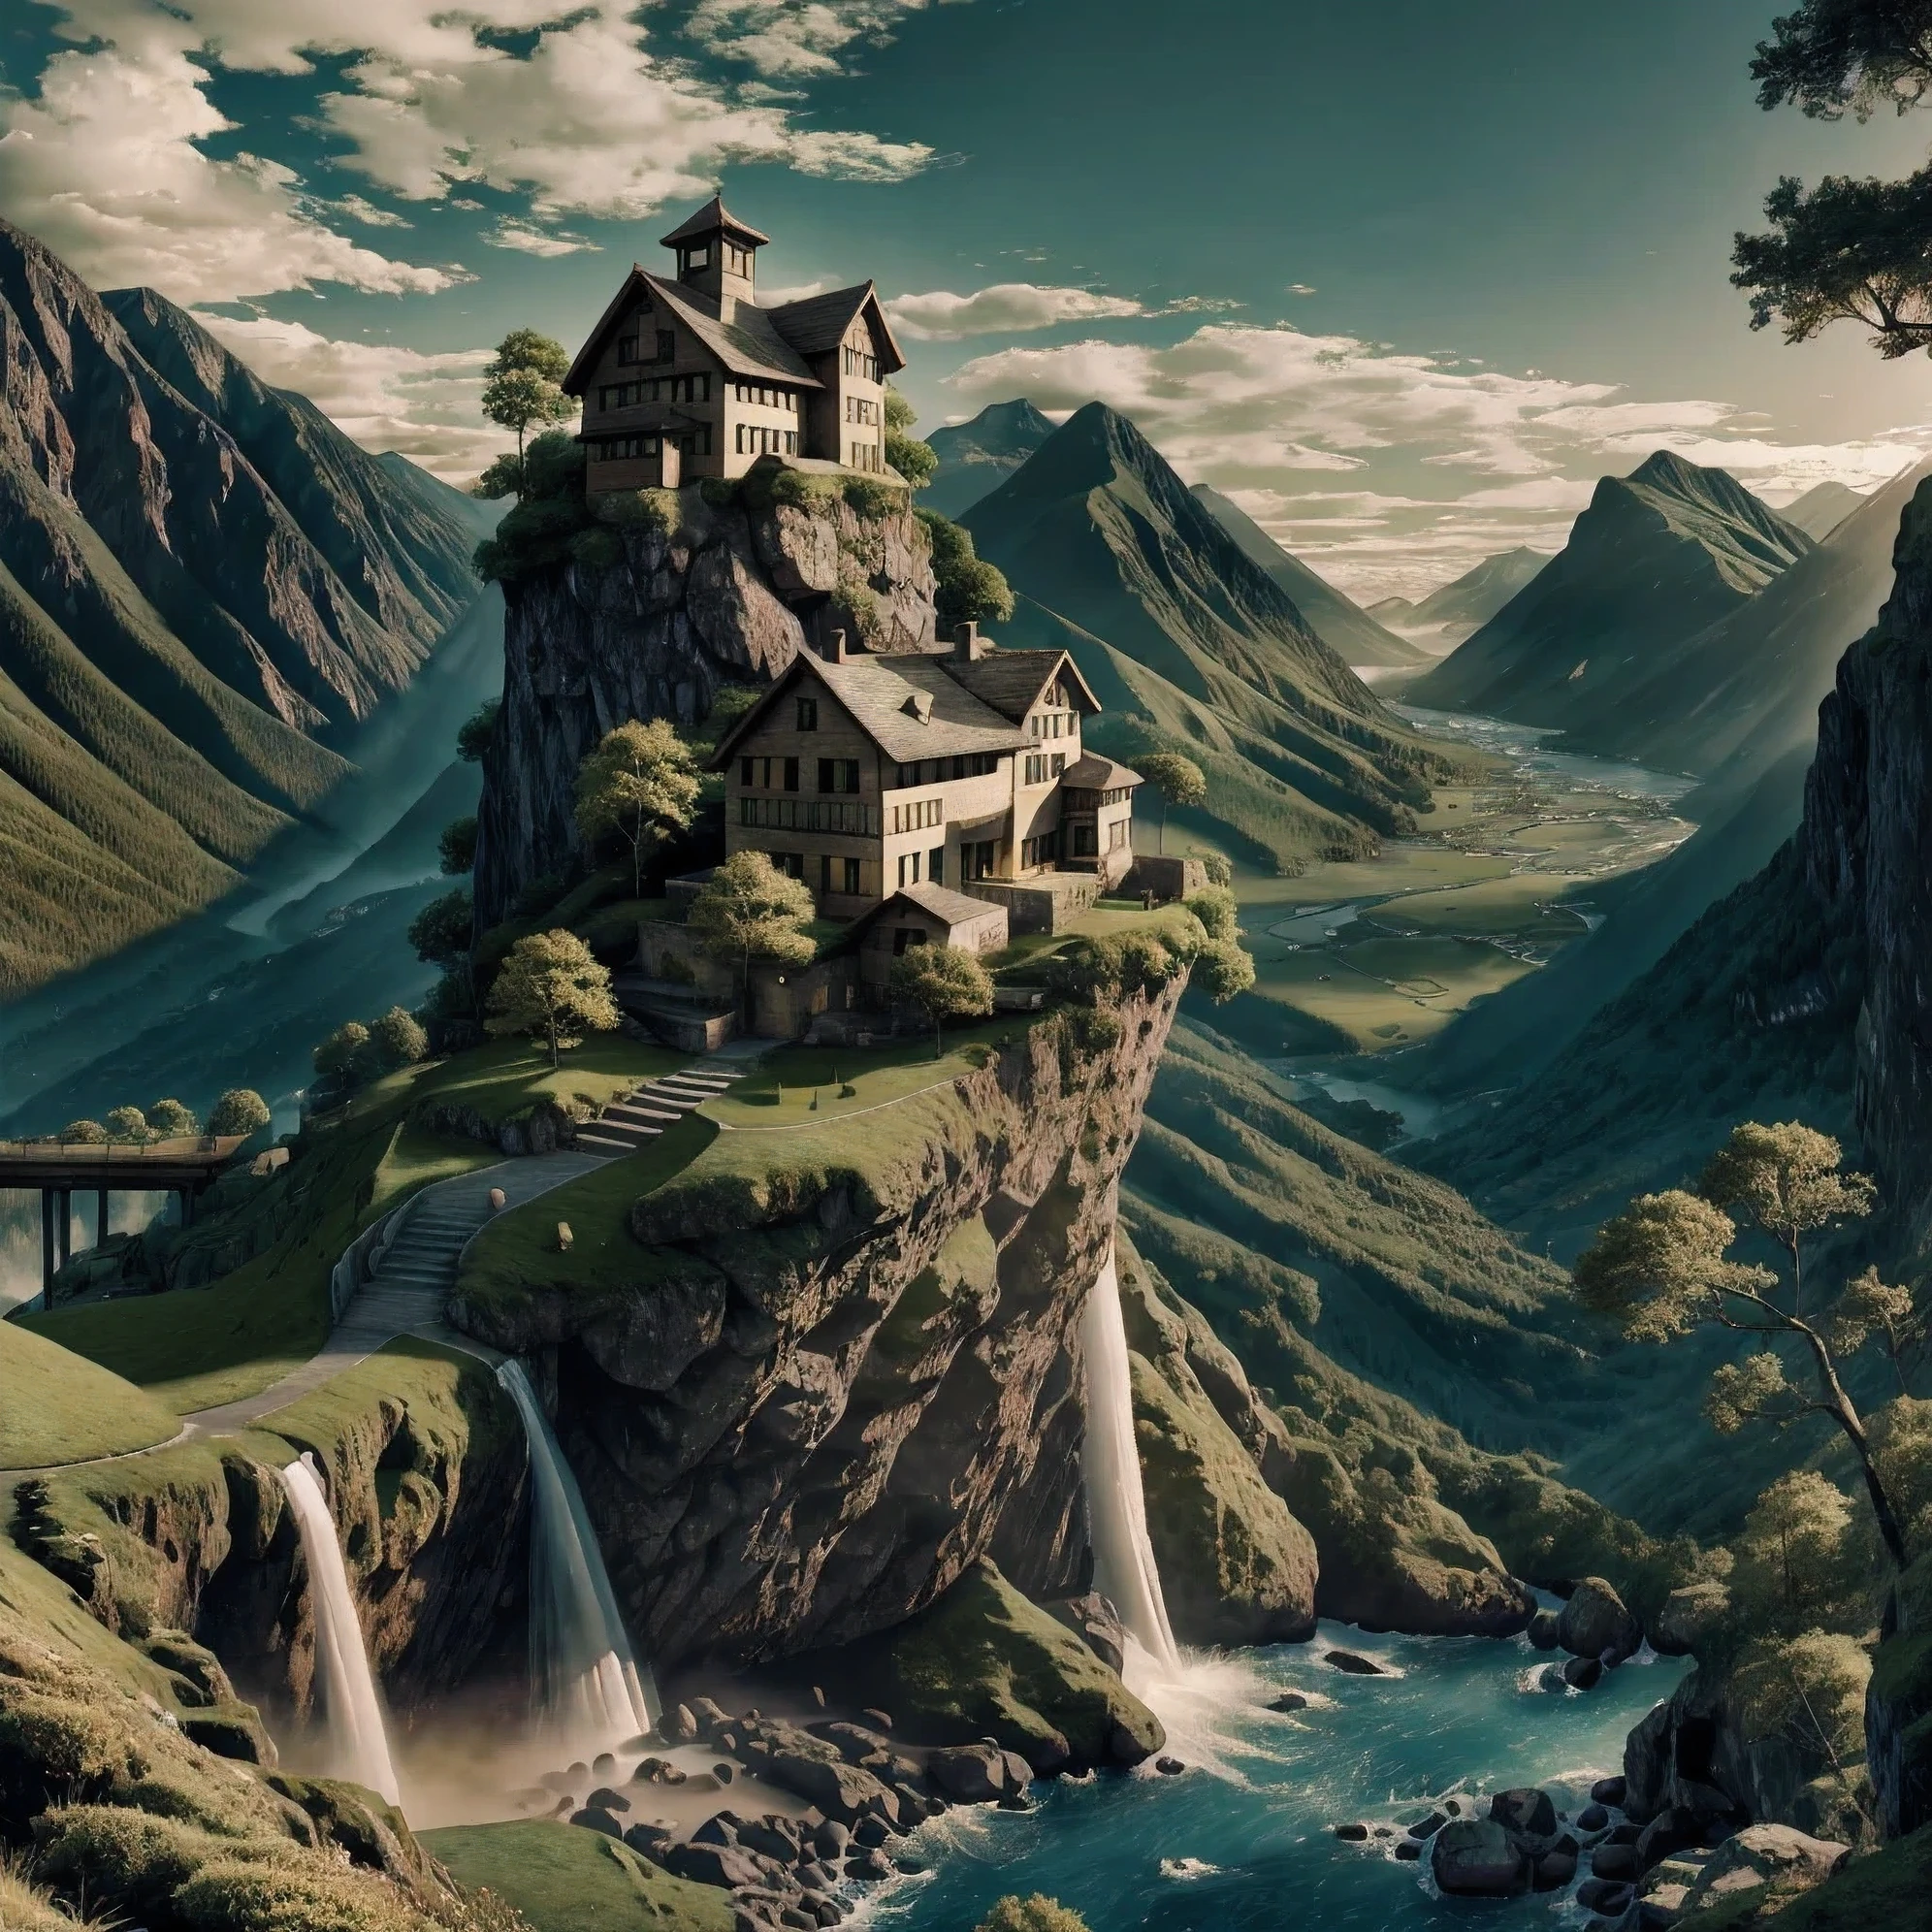 Gemälde eines Wasserfalls in einer bergigen Gegend mit einem Haus auf der Spitze, vertikale Tapete, 4 k vertikale Tapete, 4k vertikale Tapete, 8 k vertikale Tapete, 8k vertikale Tapete, Ross Tran. malerischer Hintergrund, wunderschönes Mattepainting, 4K Matte Painting, detaillierte Landschaft — Breite 672, schöne iPhone-Tapete, Avatar-Landschaft, inspiriert von Raphael Lacoste